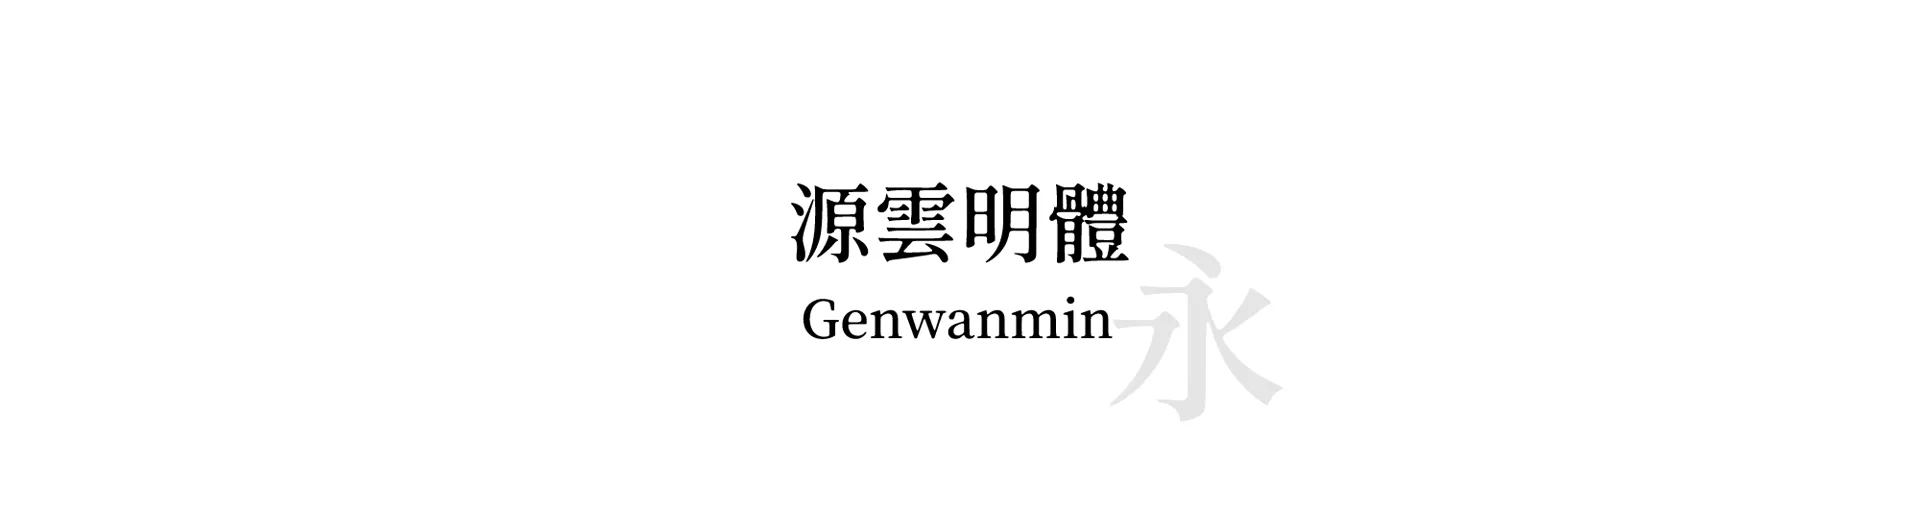 Genwanmin